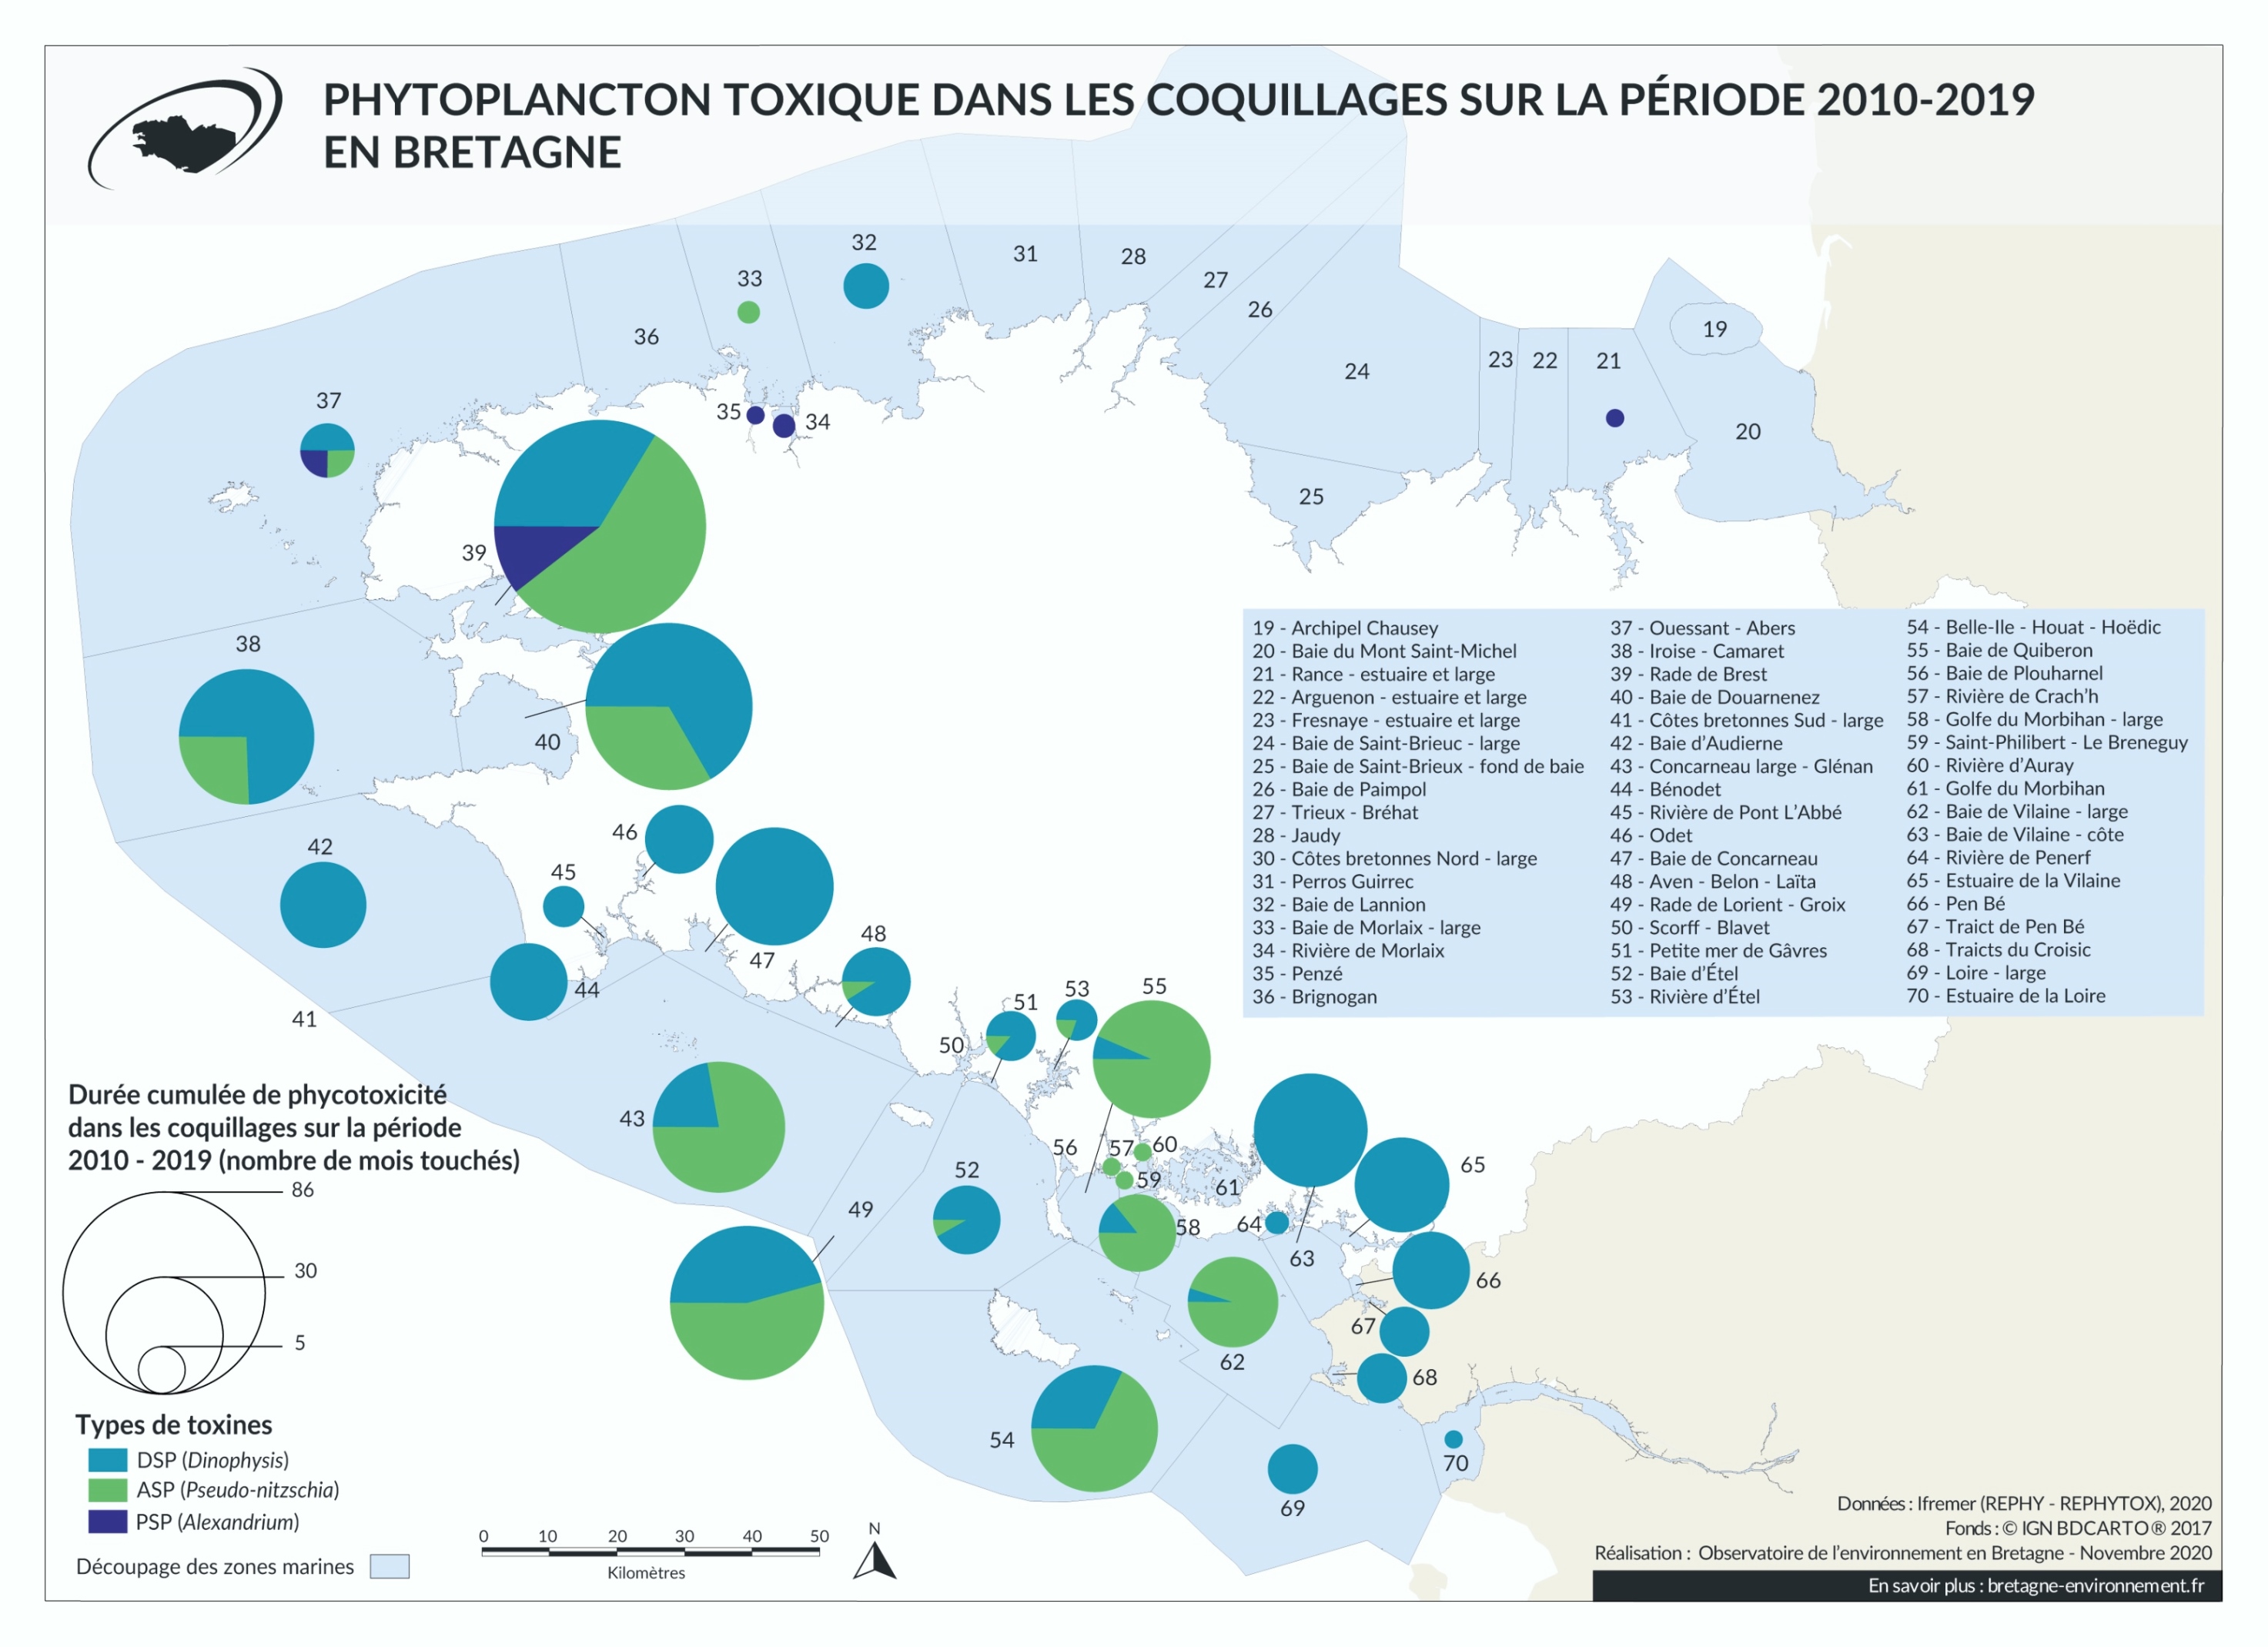 Phytoplancton toxique dans les coquillages sur la période 2010 - 2019